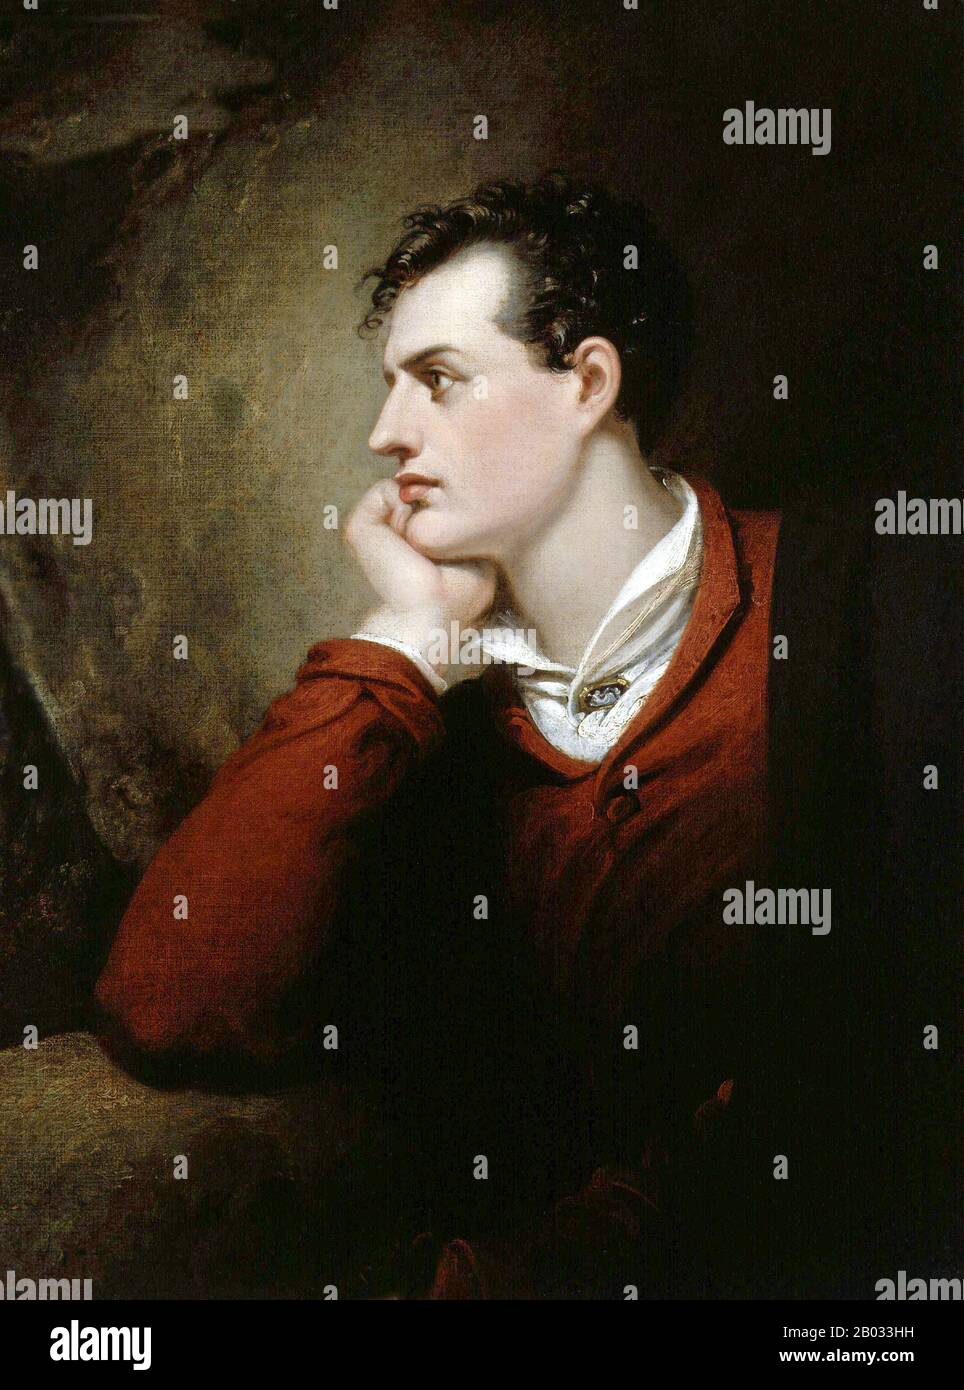 George Gordon Byron, 6th Baron Byron, FRS (22 gennaio 1788 – 19 aprile 1824), comunemente noto come Lord Byron, è stato un poeta inglese e una figura di spicco Nel Movimento Romantico. Tra le sue opere più conosciute ci sono le lunghe poesie narrative Don Juan e il pellegrinaggio di Childe Harold, e la breve lirica Che Cammina in bellezza. Byron è considerato uno dei più grandi poeti britannici, e rimane ampiamente letto e influente. Ha viaggiato molto in Europa, specialmente in Italia dove ha vissuto per sette anni. Più tardi nella vita, Byron si unì alla Guerra di Indipendenza greca combattendo l'Impero Ottomano, per wh Foto Stock